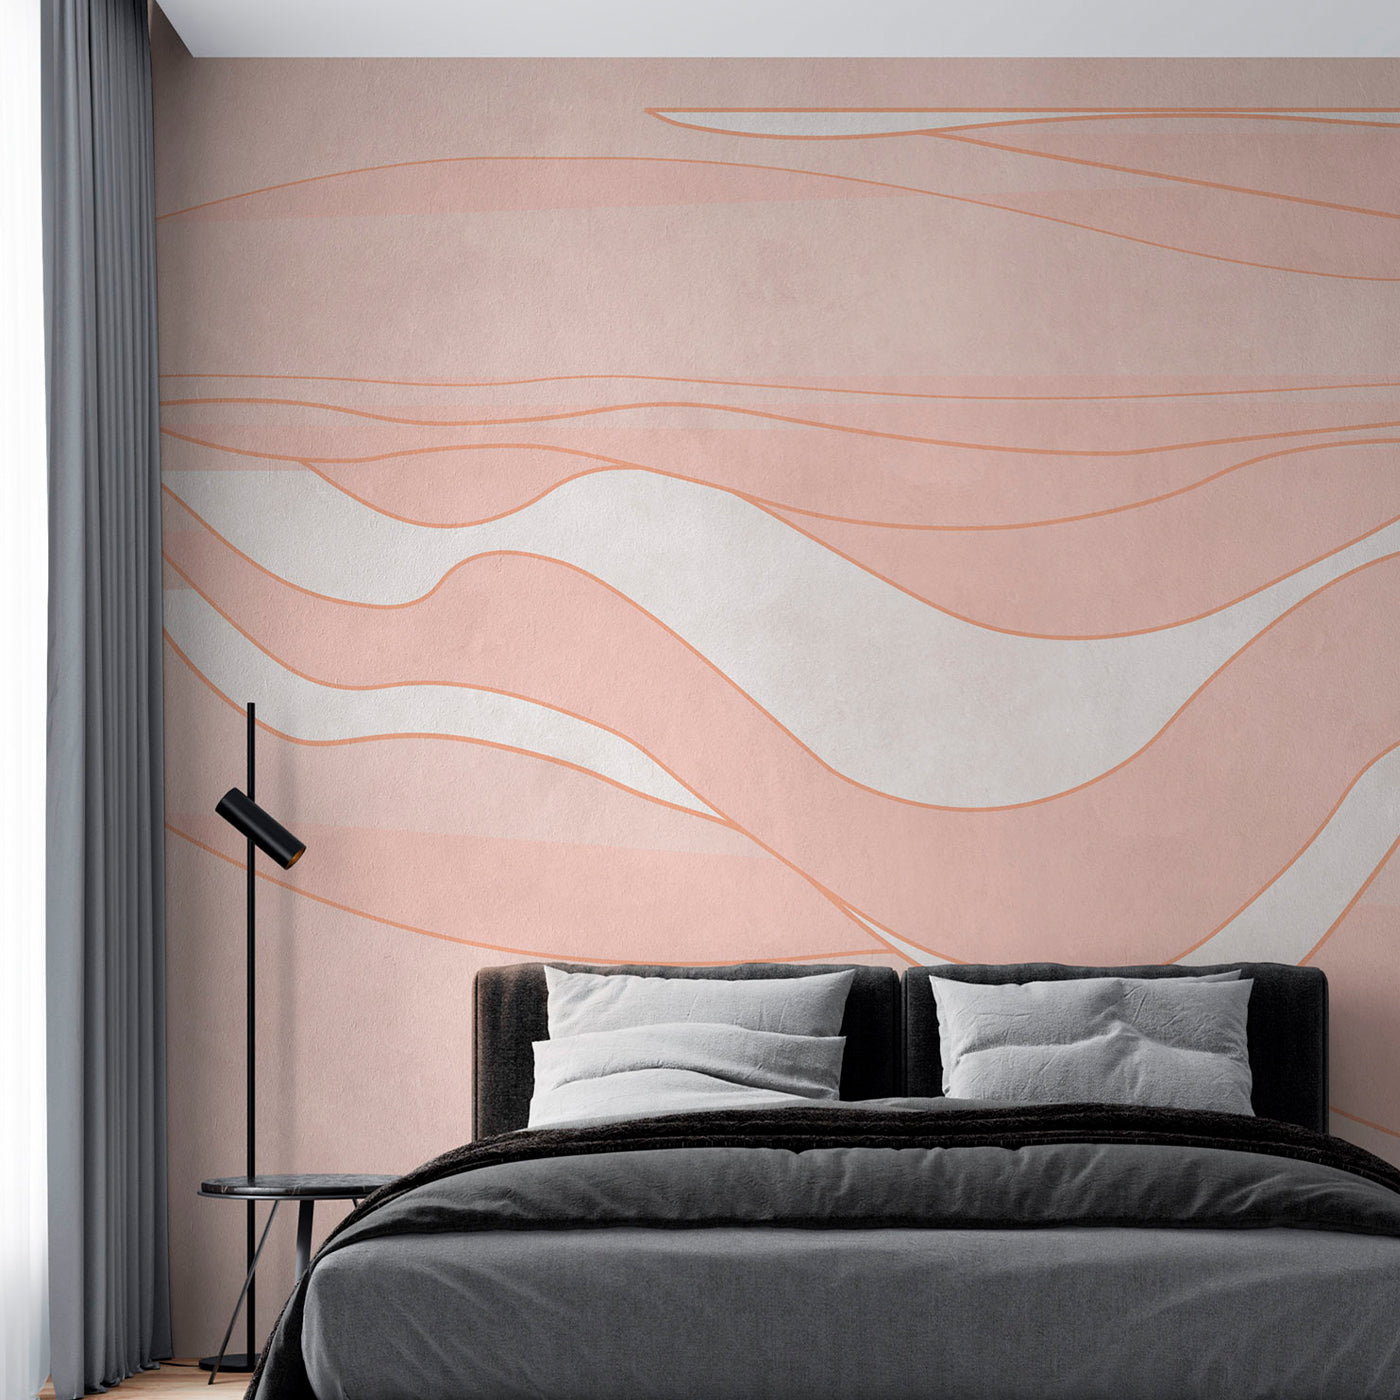 Pink Deep Wave textured wallpaper - Alternative view 2